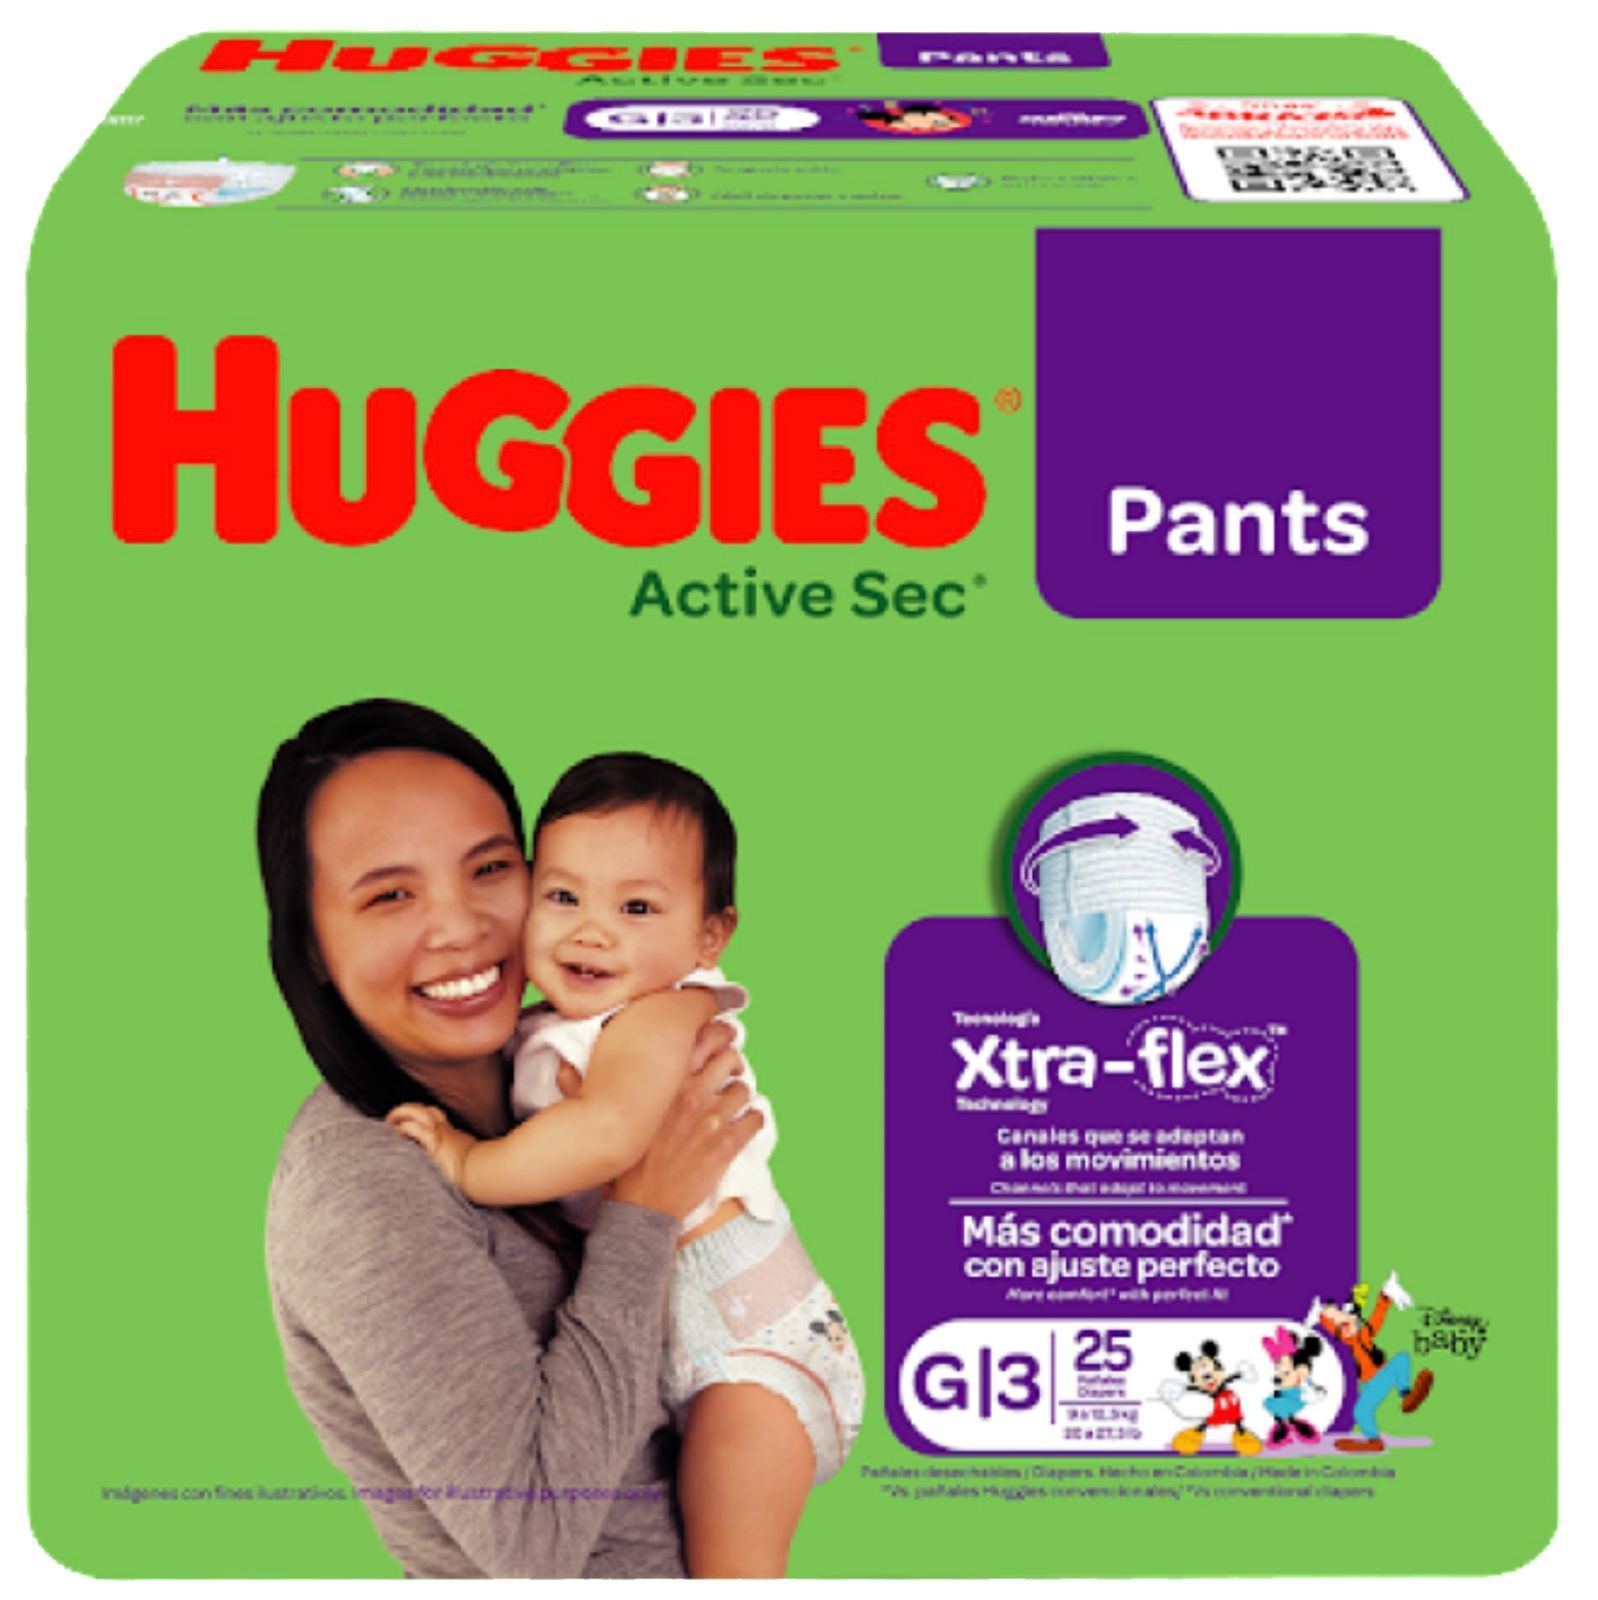 Huggies® Active Sec Pants Xtra Flex